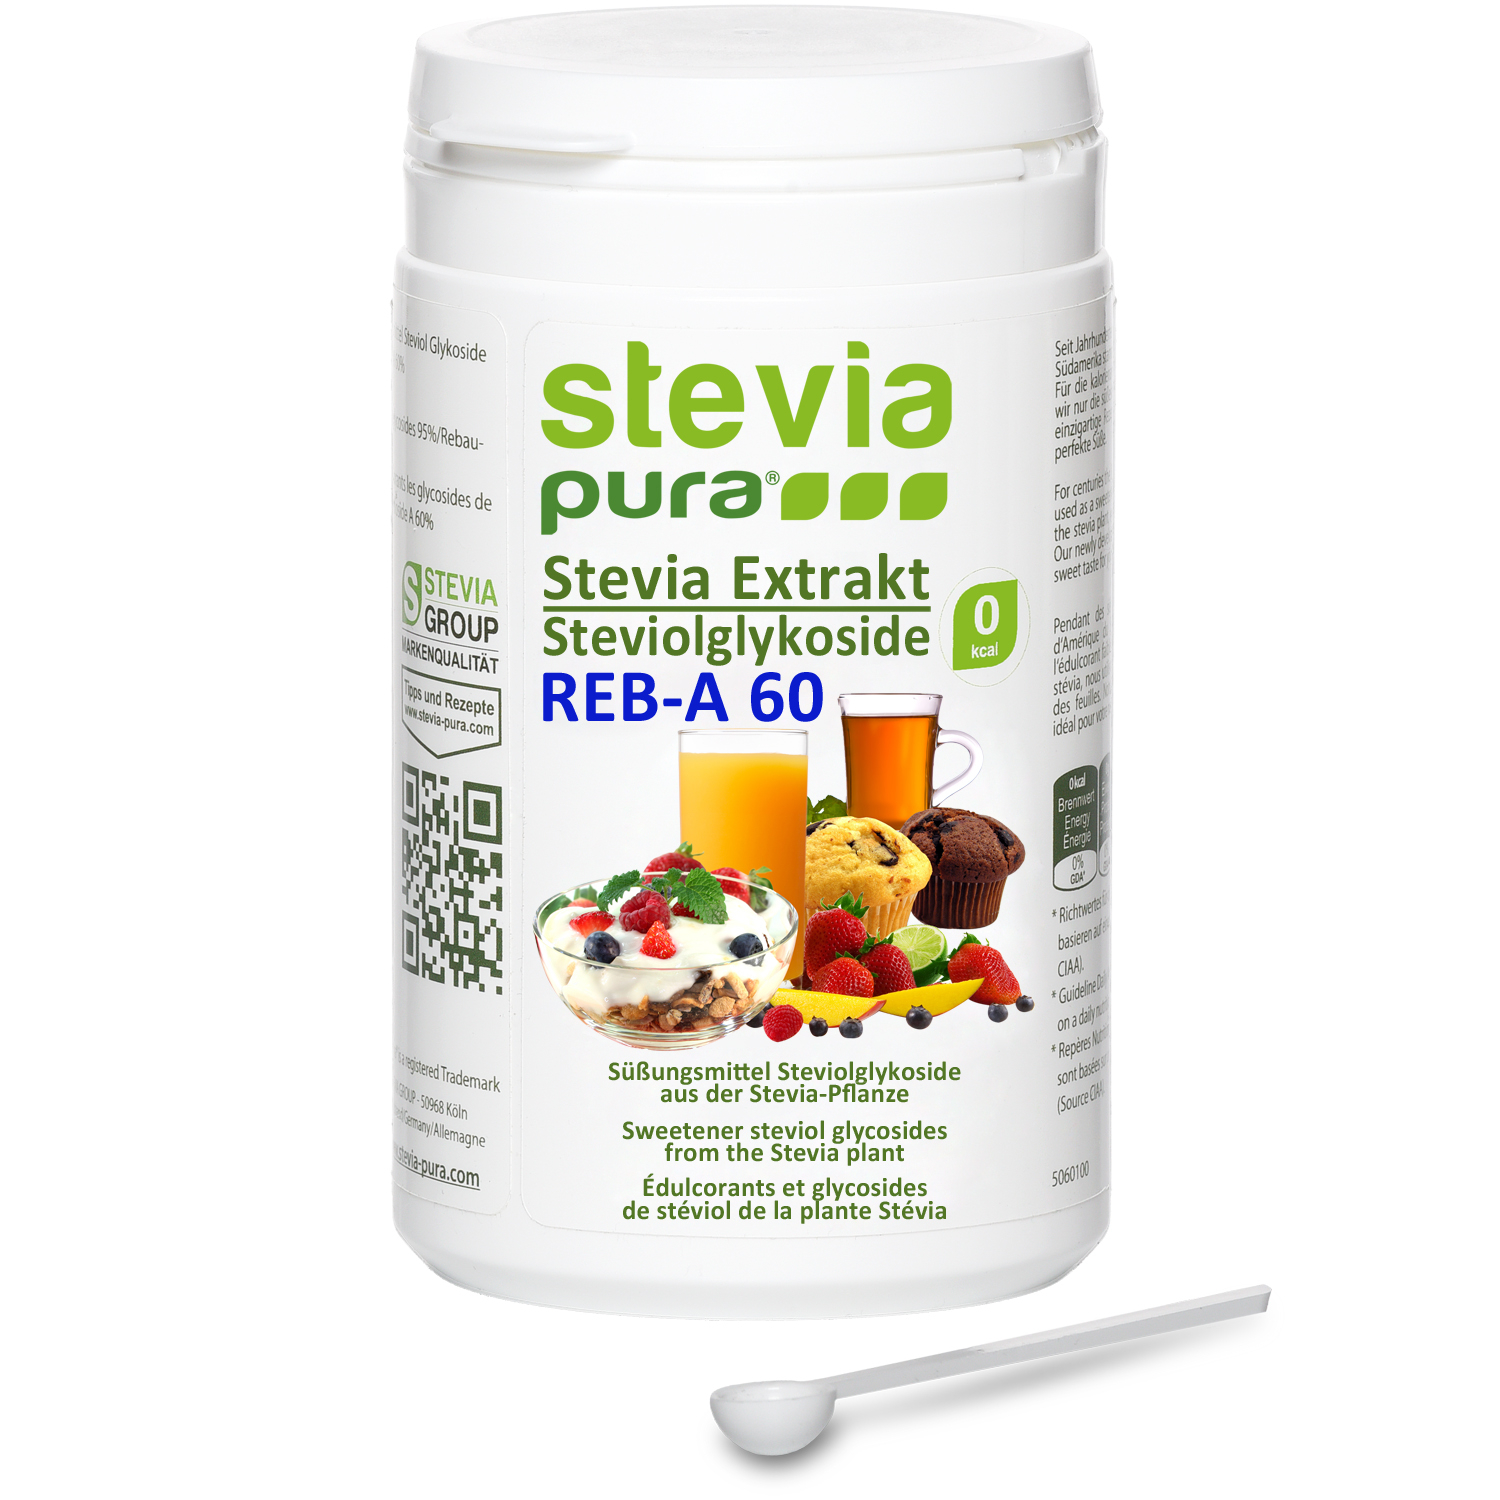 Comprar Extrato de Stevia em Pó sem aditivos